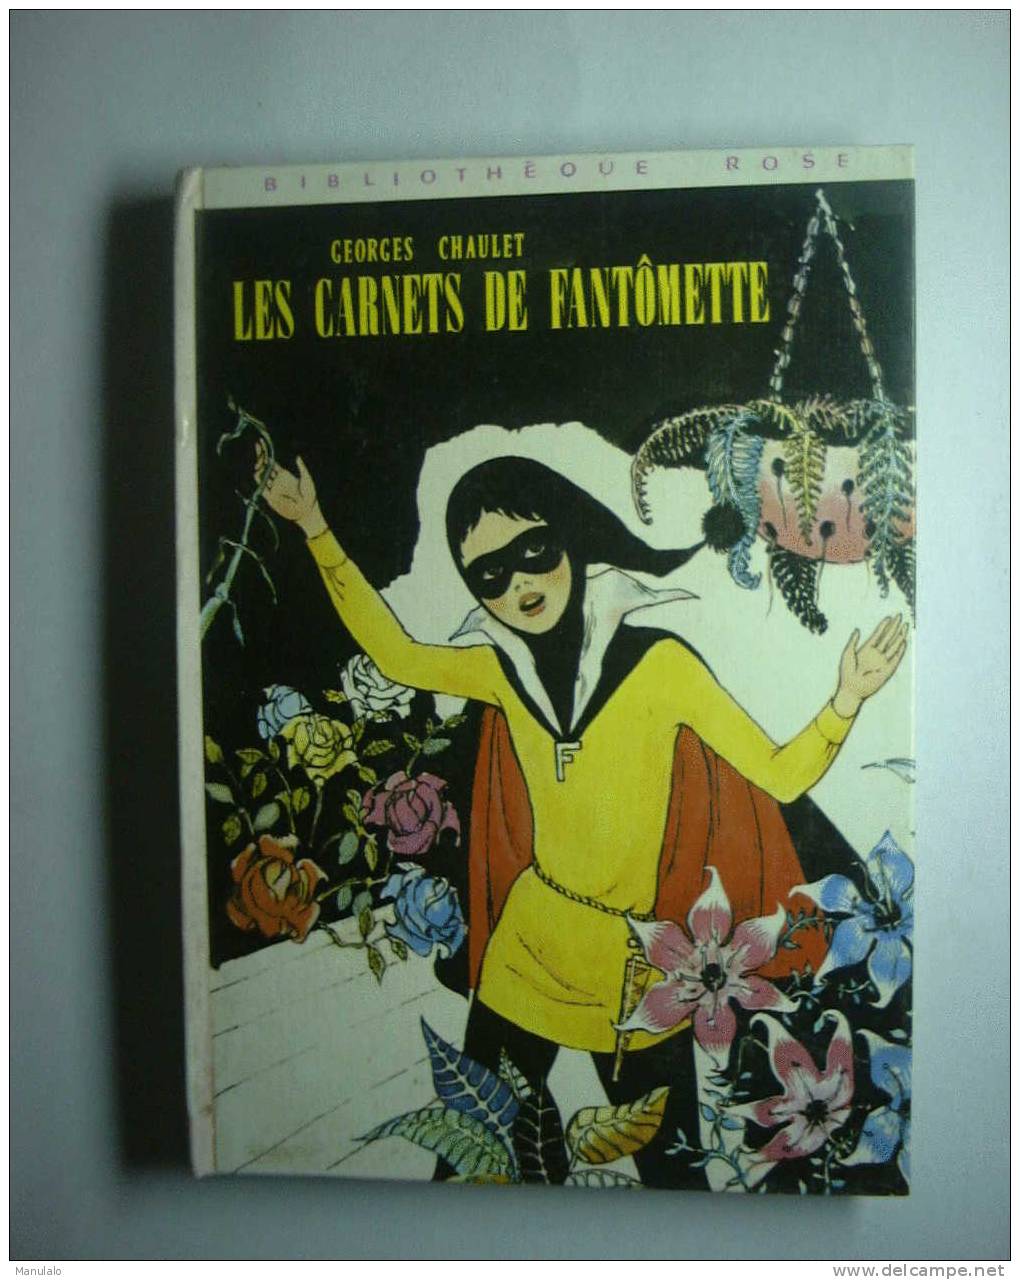 Livre Bibliothèque Rose Hachette De Georges Chaulet " Les Carnets De Fantômette " Année 1979 - Bibliothèque Rose